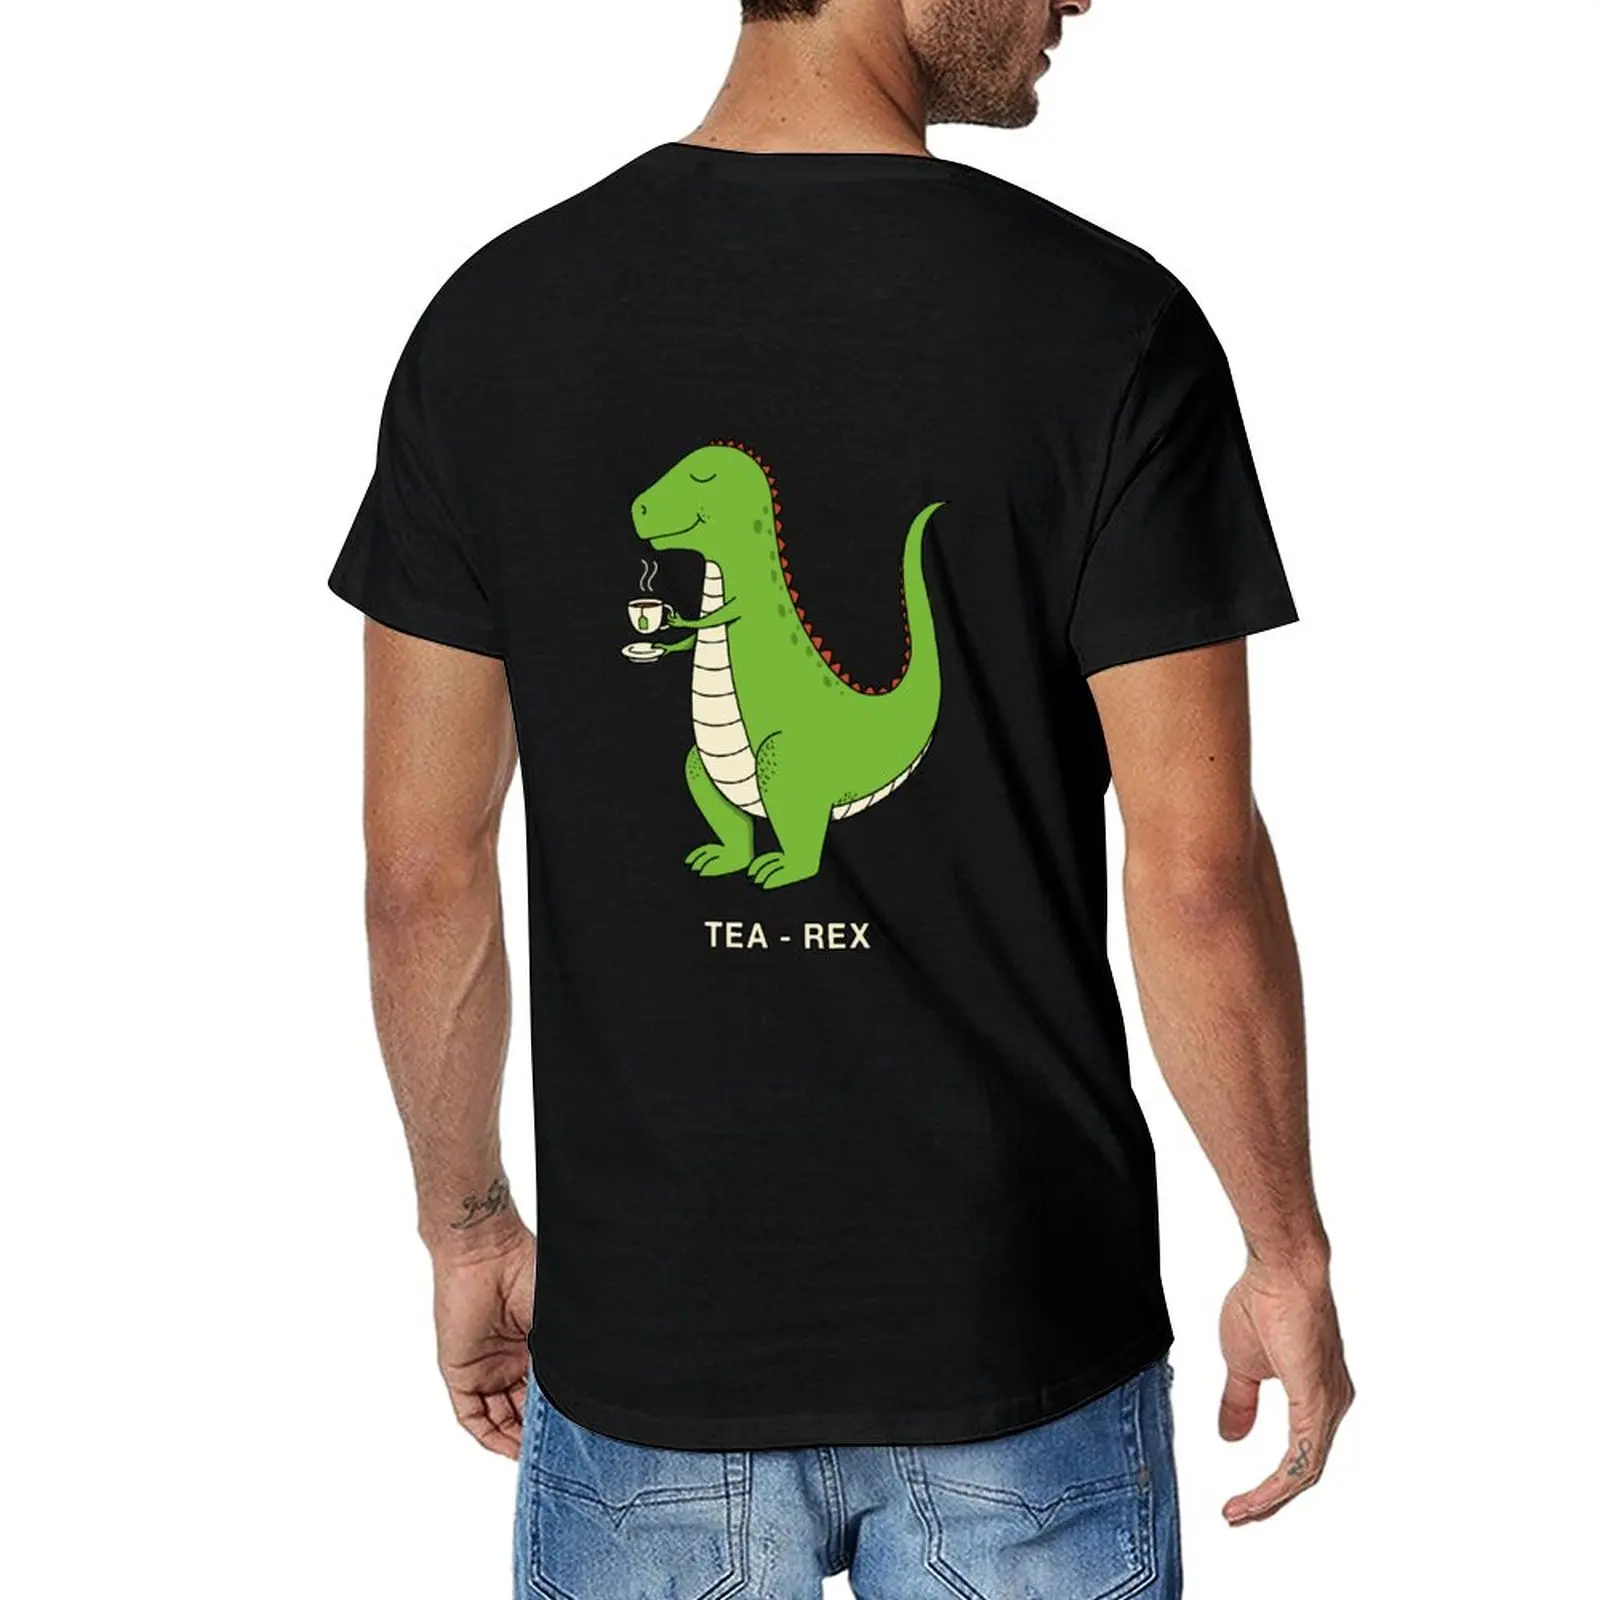 Новая футболка Tea Rex, милая одежда, футболки больших размеров, мужские высокие футболки